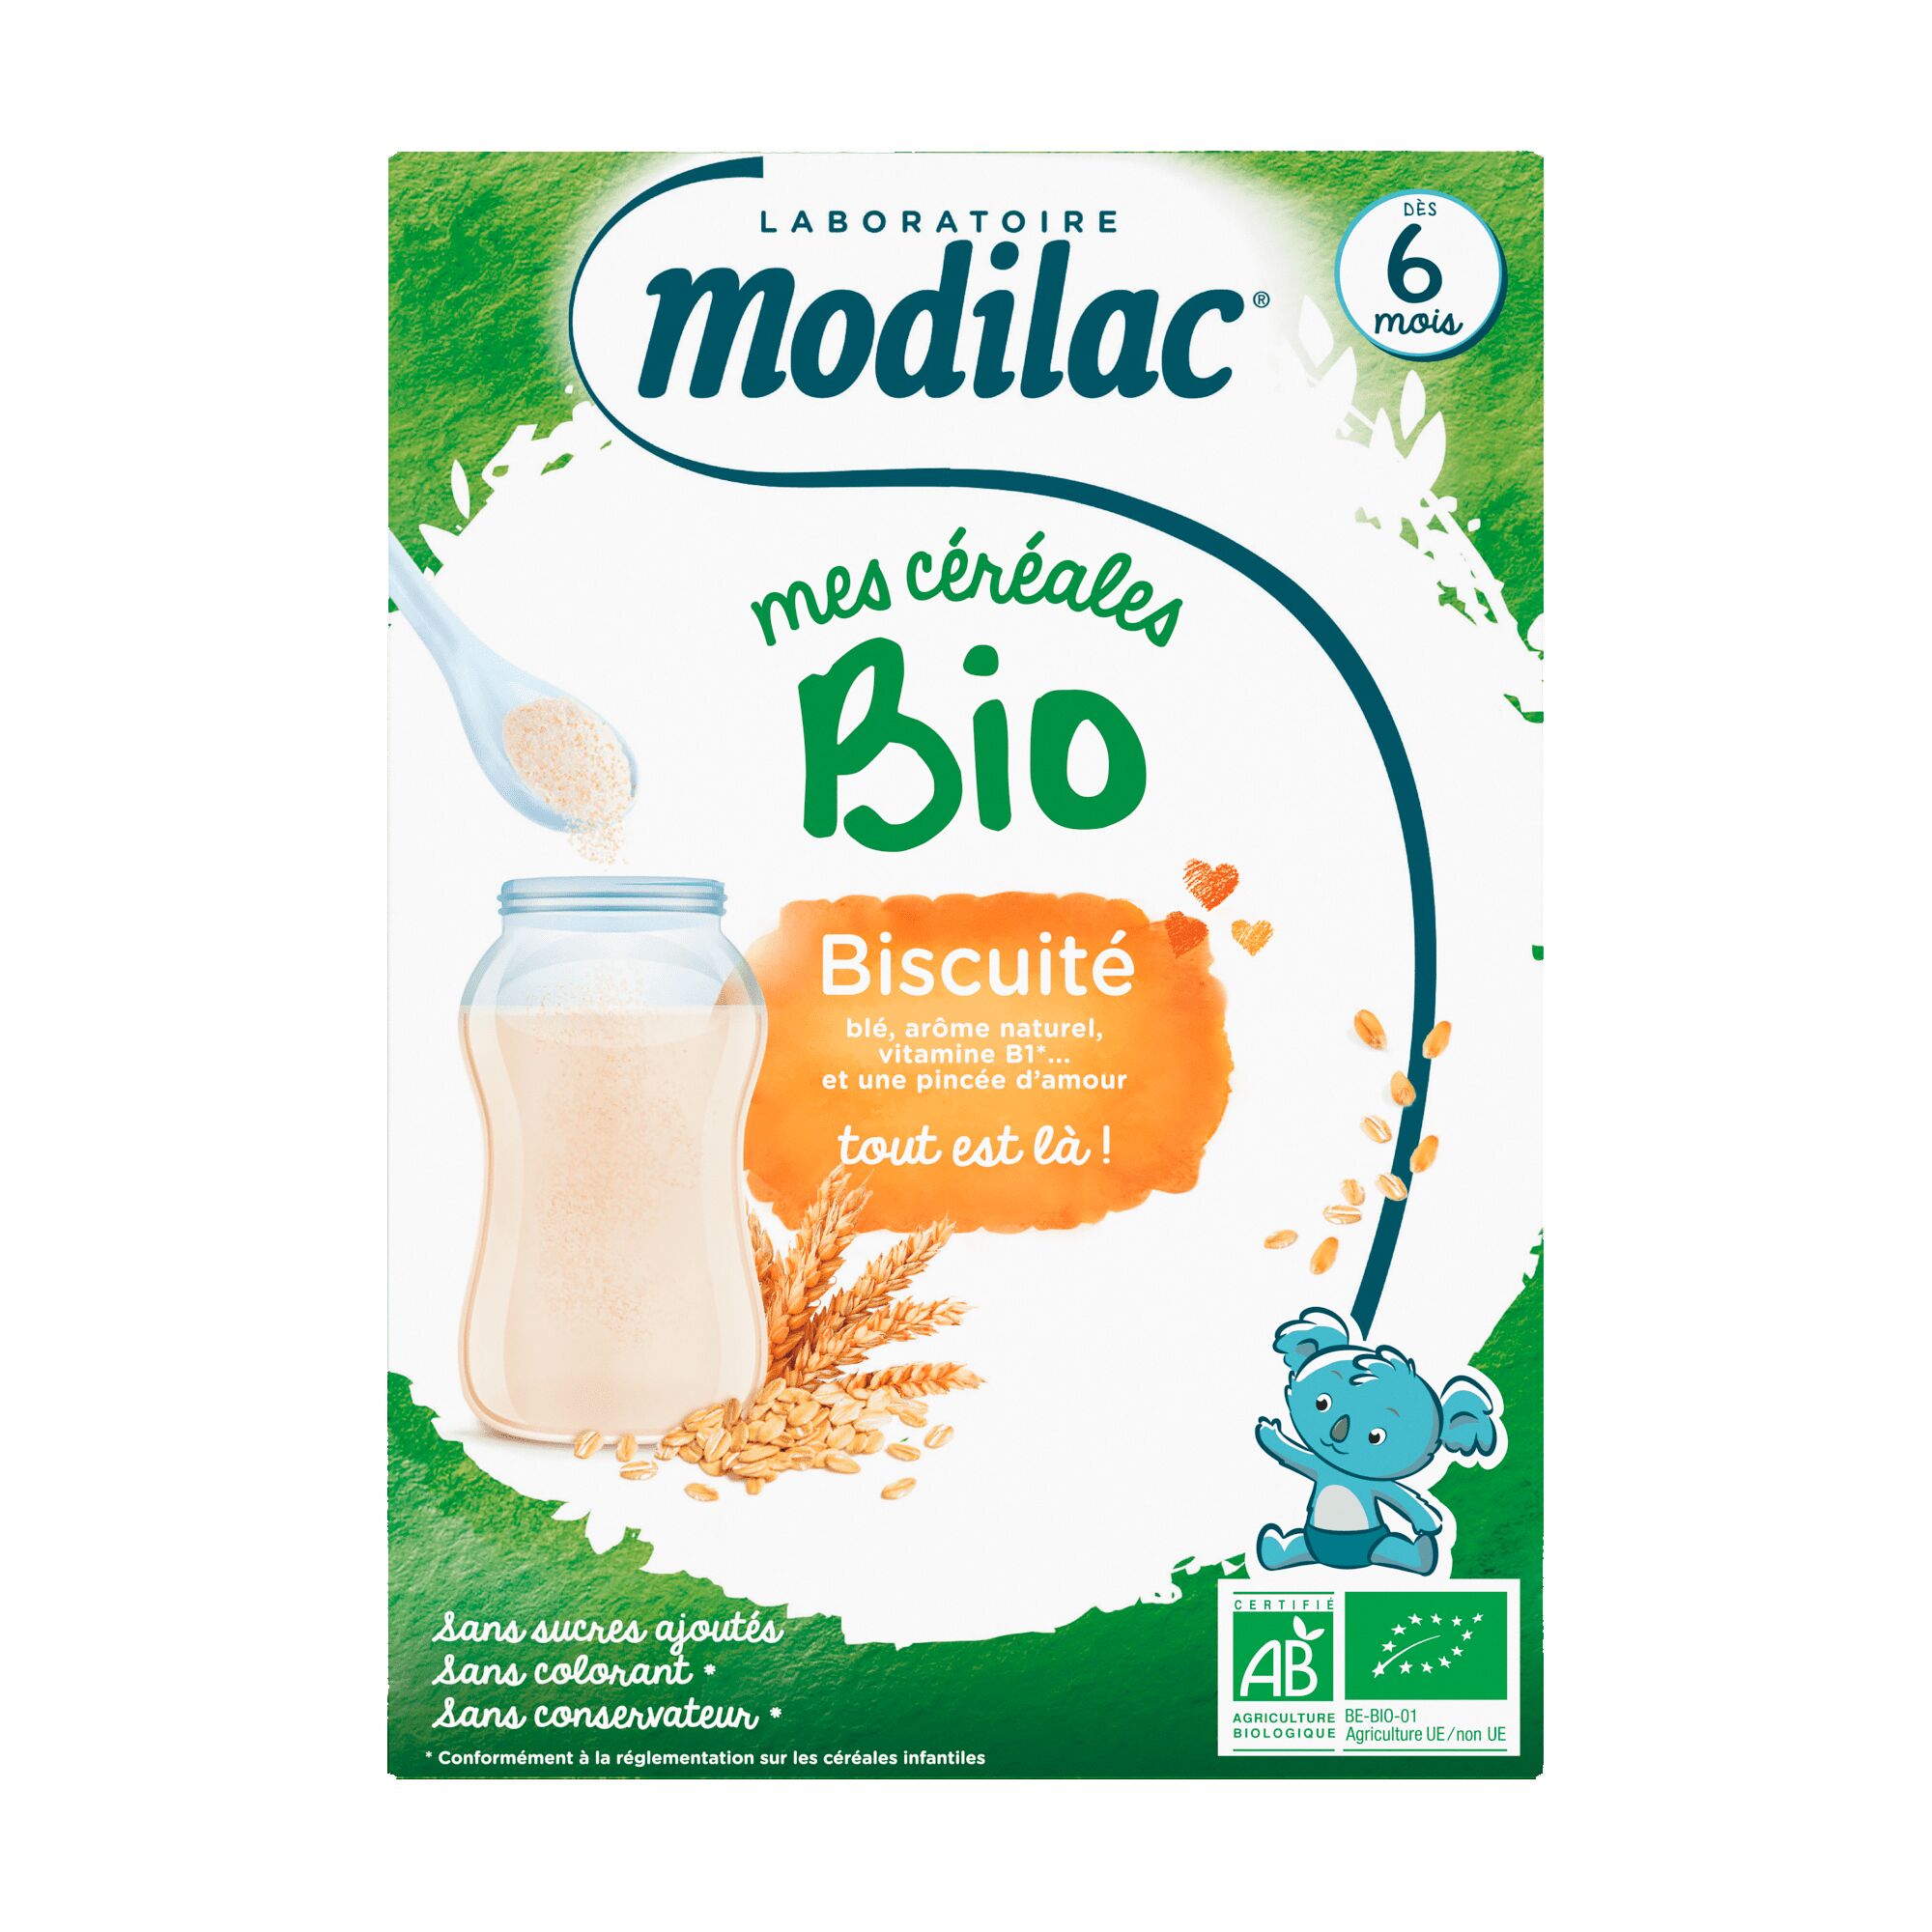 Modilac Mes Céréales Bio Biscuit - Dès 6 mois, 250g